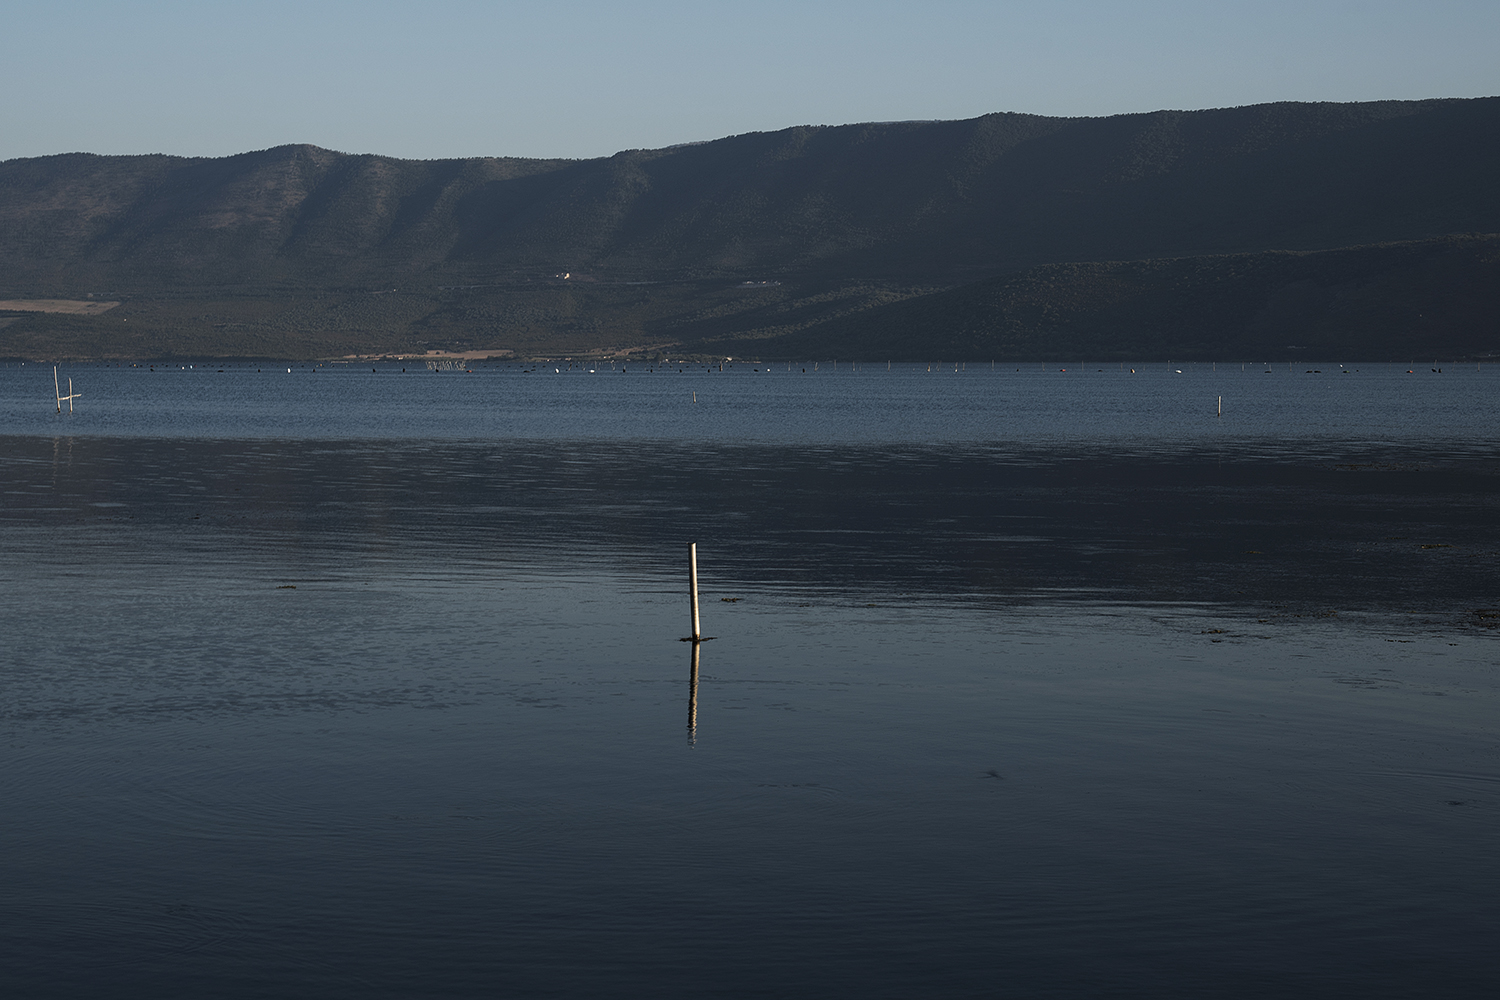  41° 54’ 36” N , 15° 46’ 26” E Lago di Varano, Varano   Nel lago di Varano i mitili vengono allevati con il sistema long-line a sospensione, in vivai di forma rettangolare costituiti da pali in castagno (ricco di tannino e quindi più resistente all’